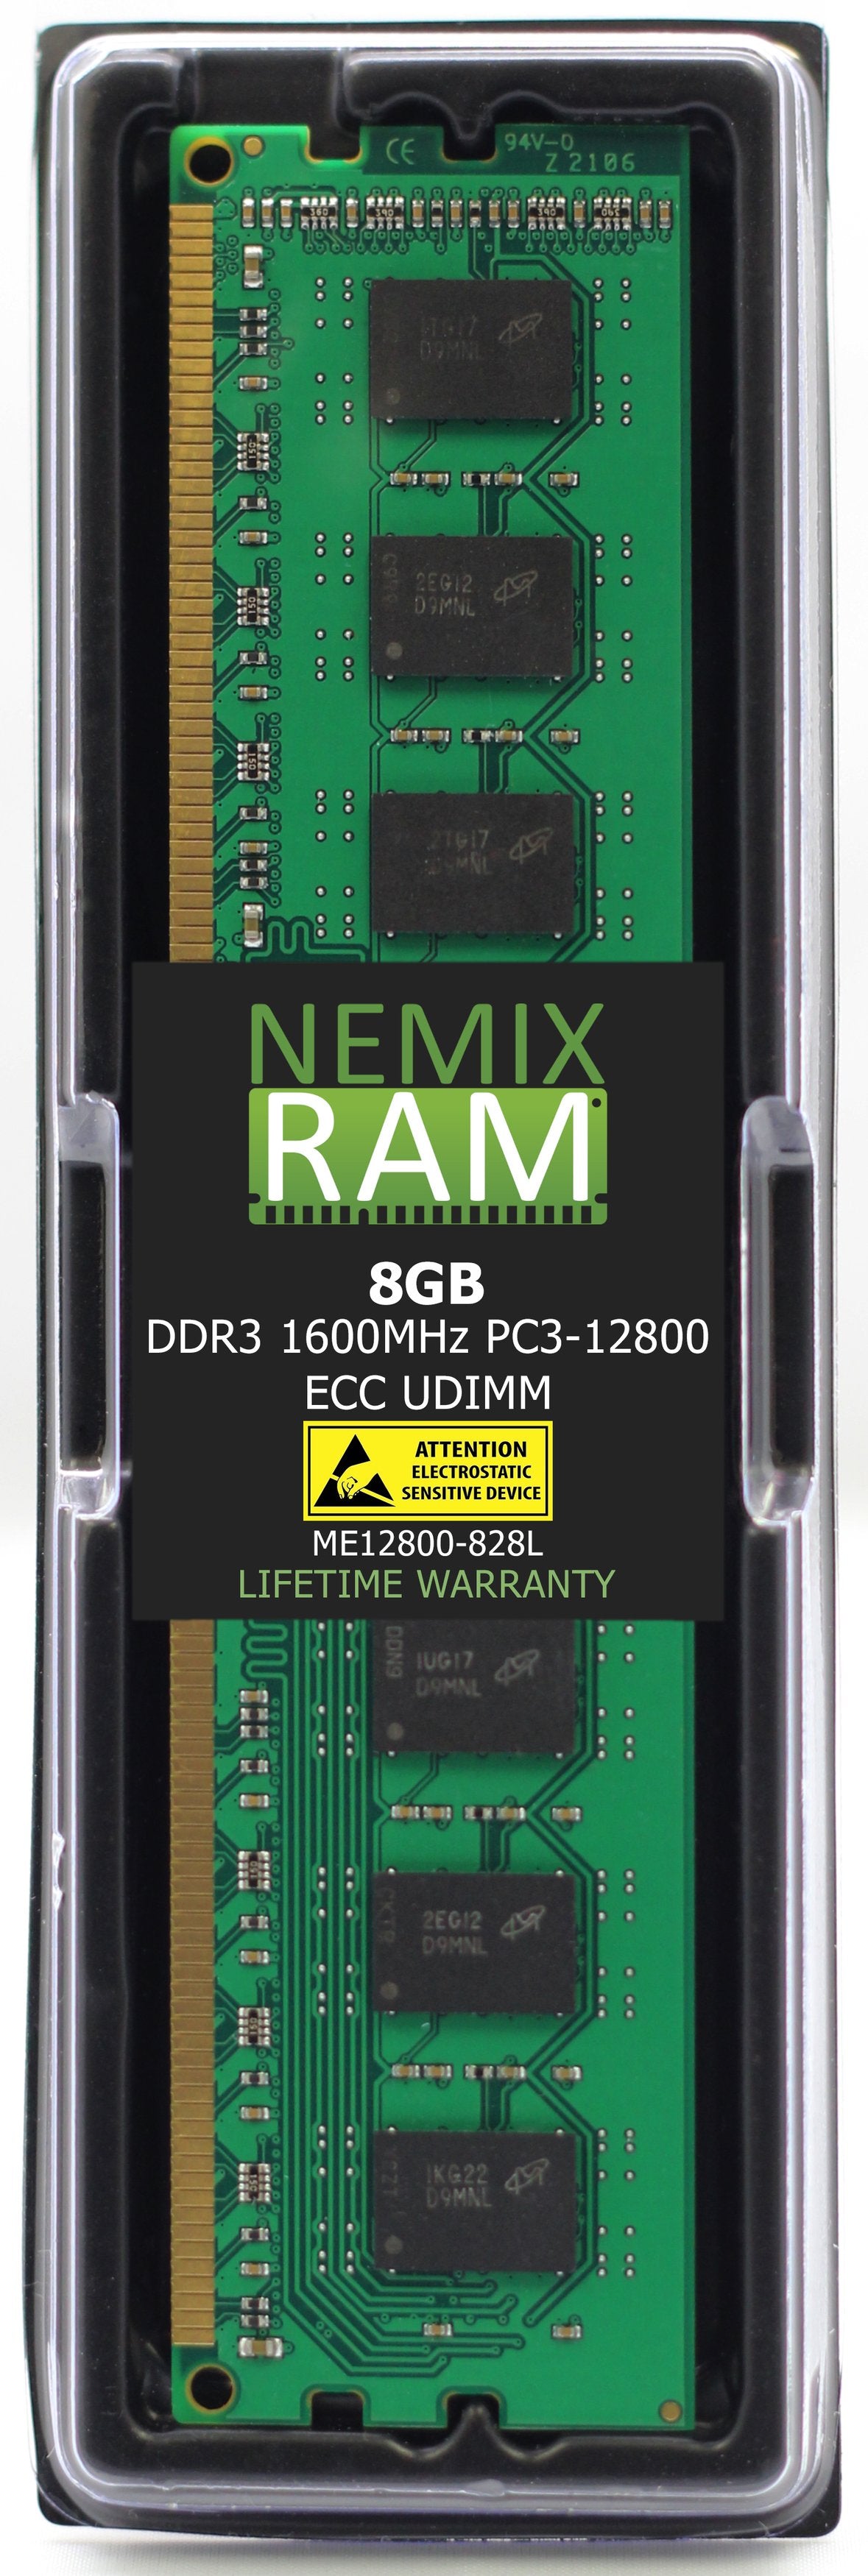 8GB DDR3 1600MHZ PC3-12800 ECC UDIMM Compatible with Supermicro MEM-DR380L-CL01-EU16